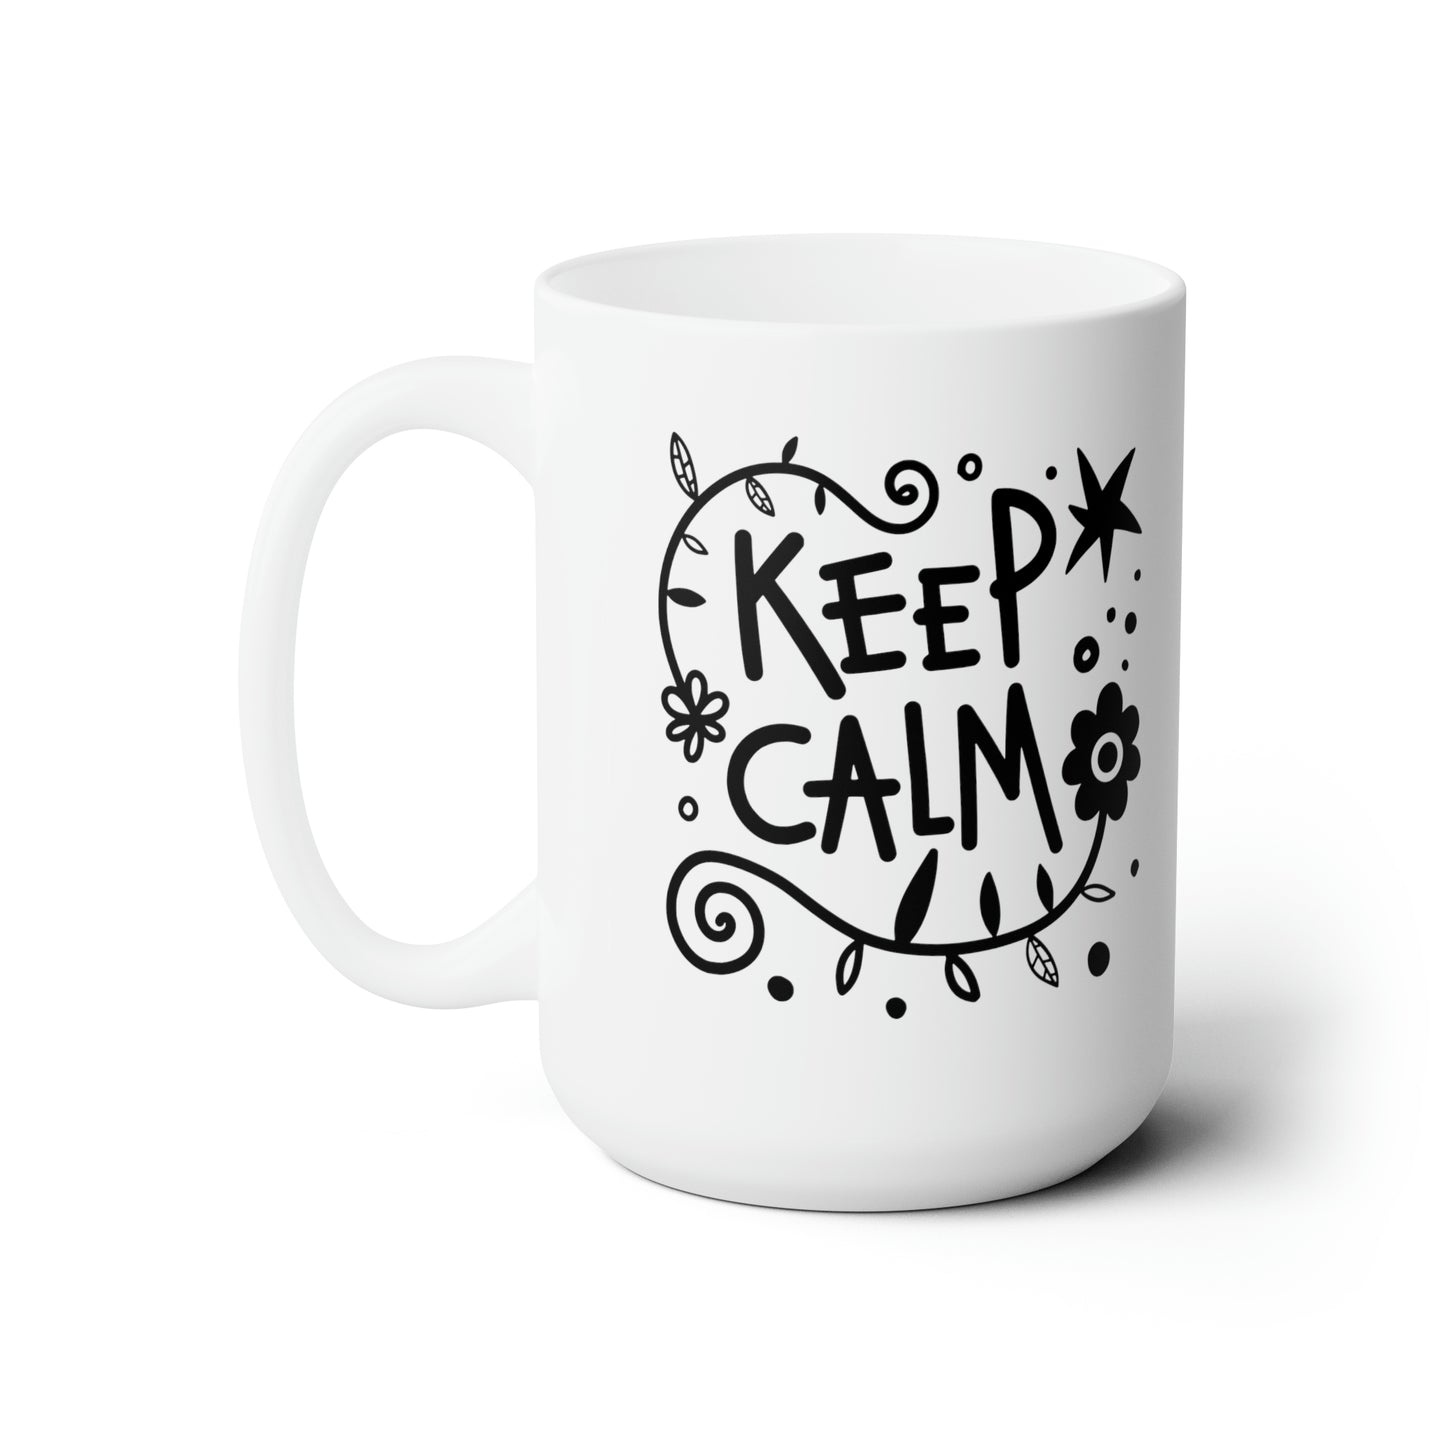 Keep calm Ceramic Mug 15oz - MenHal store